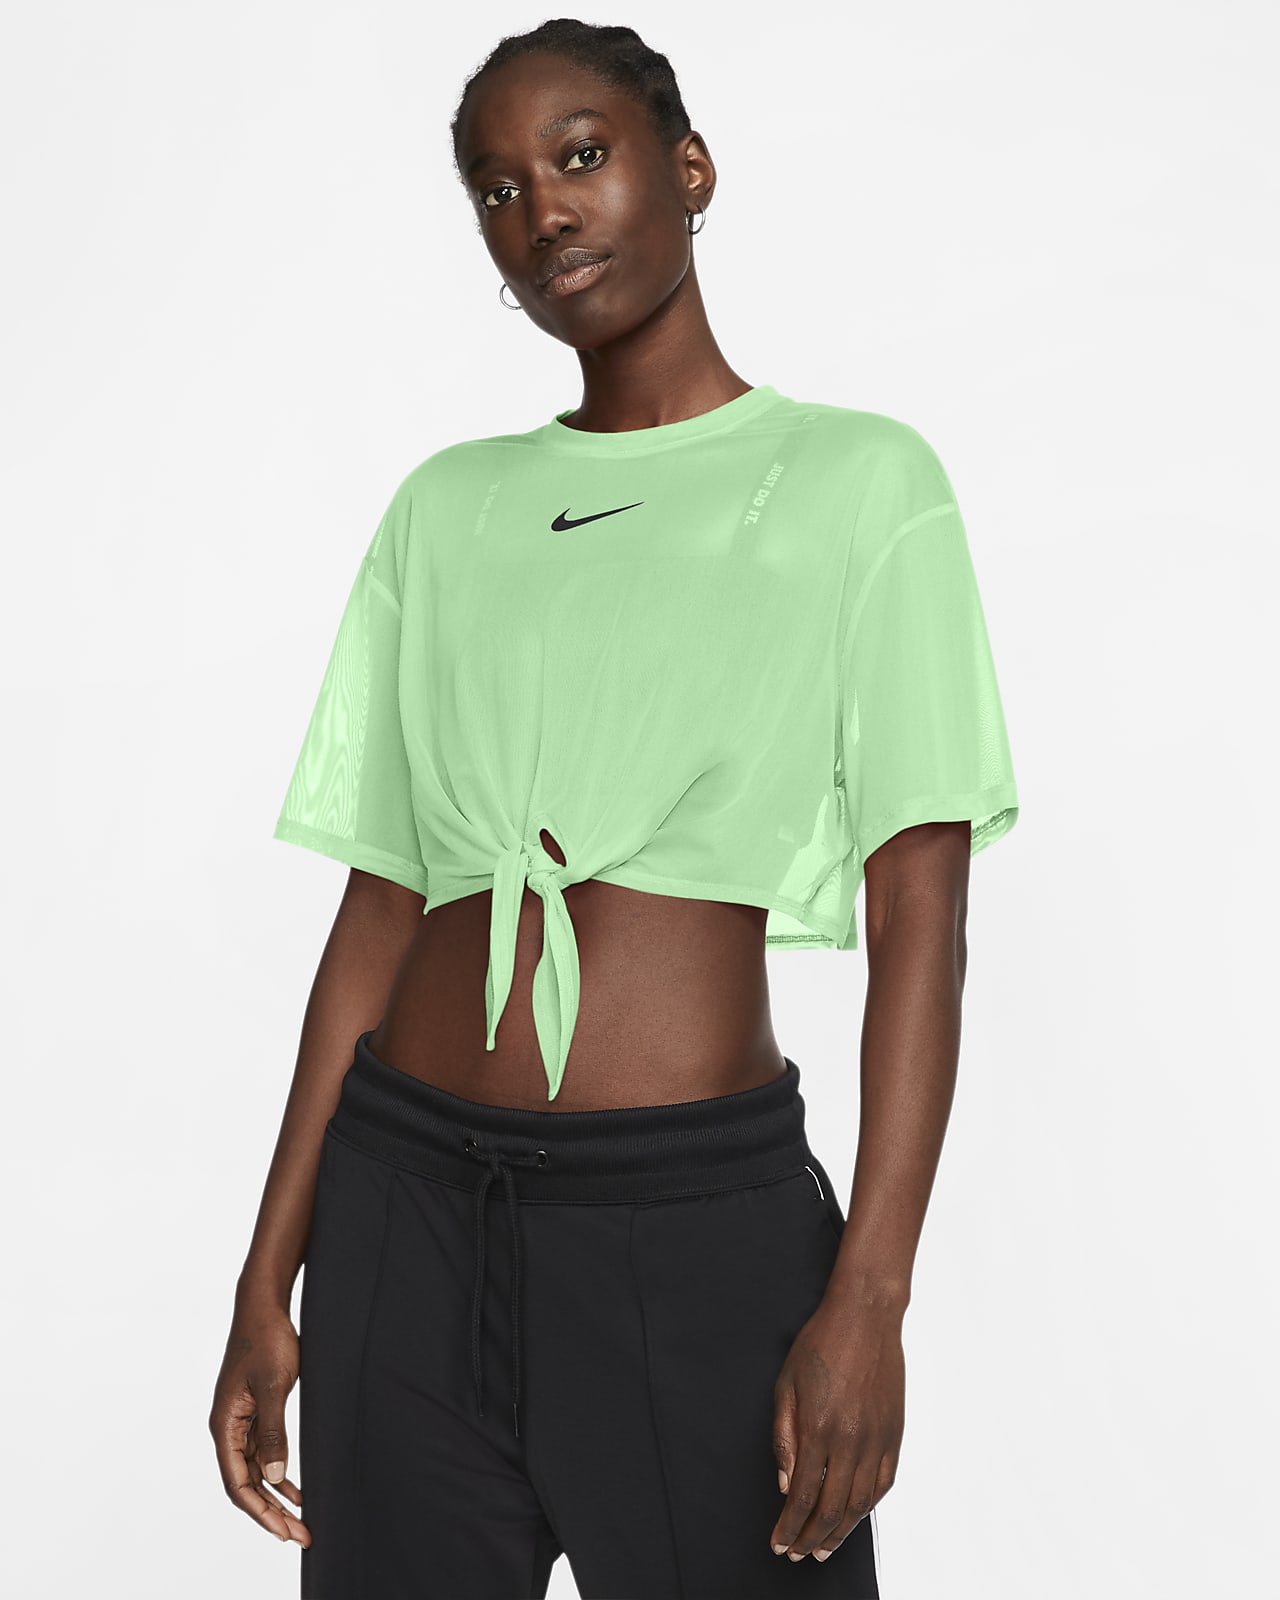 Nike Sportswear Women's Short-Sleeve Top. Nike EG